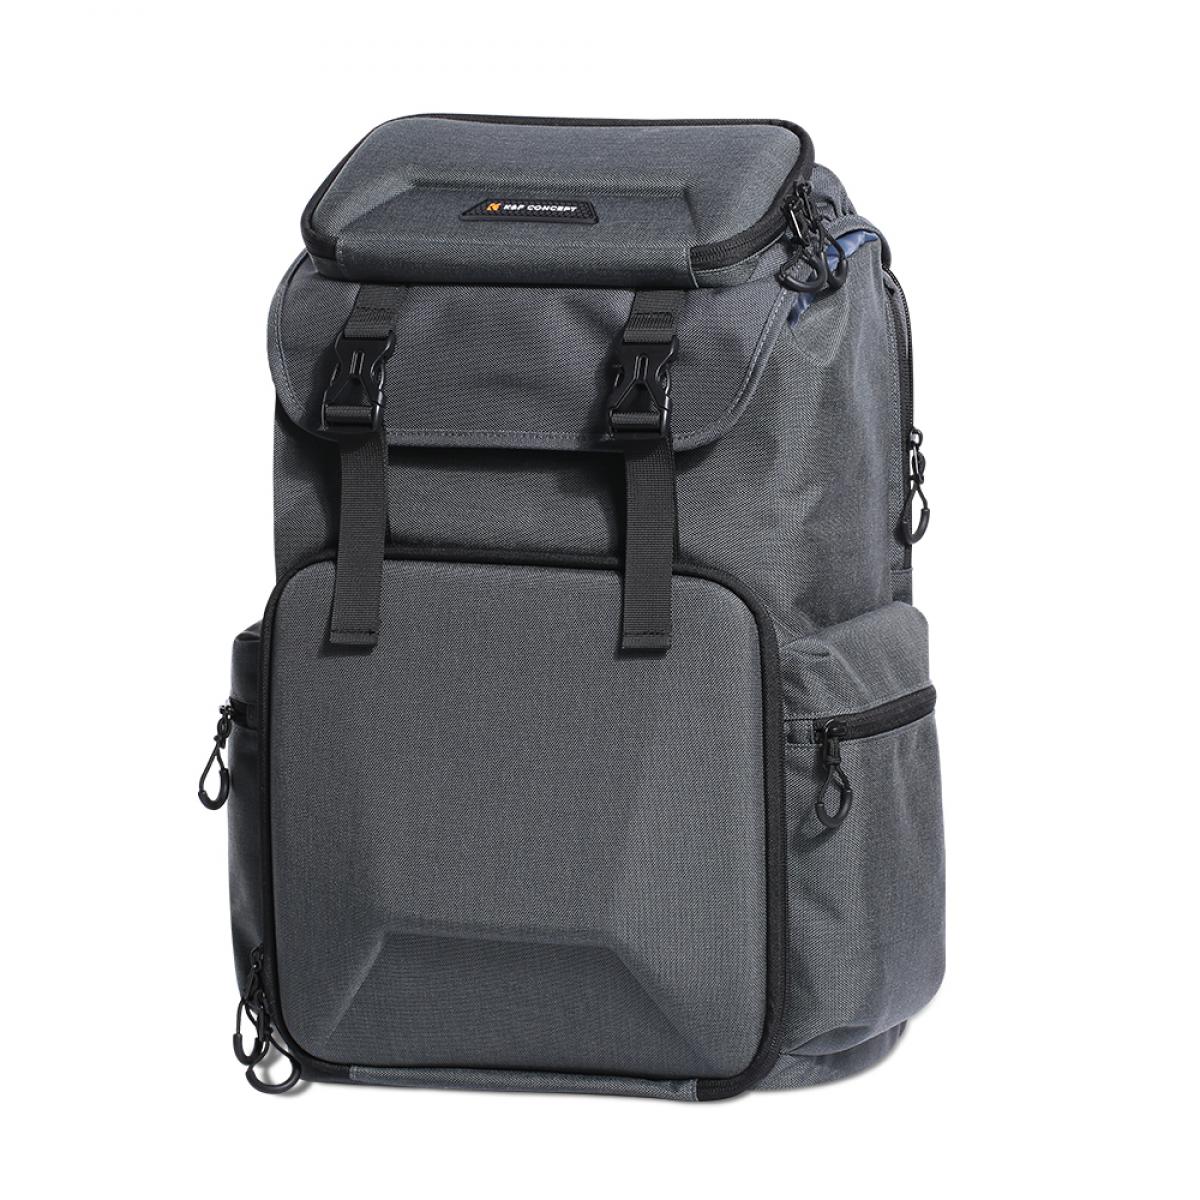 sac à dos pour appareil photo avec rembourrage intérieur et protection anti-pluie supplémentaire pour Canon Nikon Sony pour ordinateur portable 15 pouces antichoc SLR/DSLR 